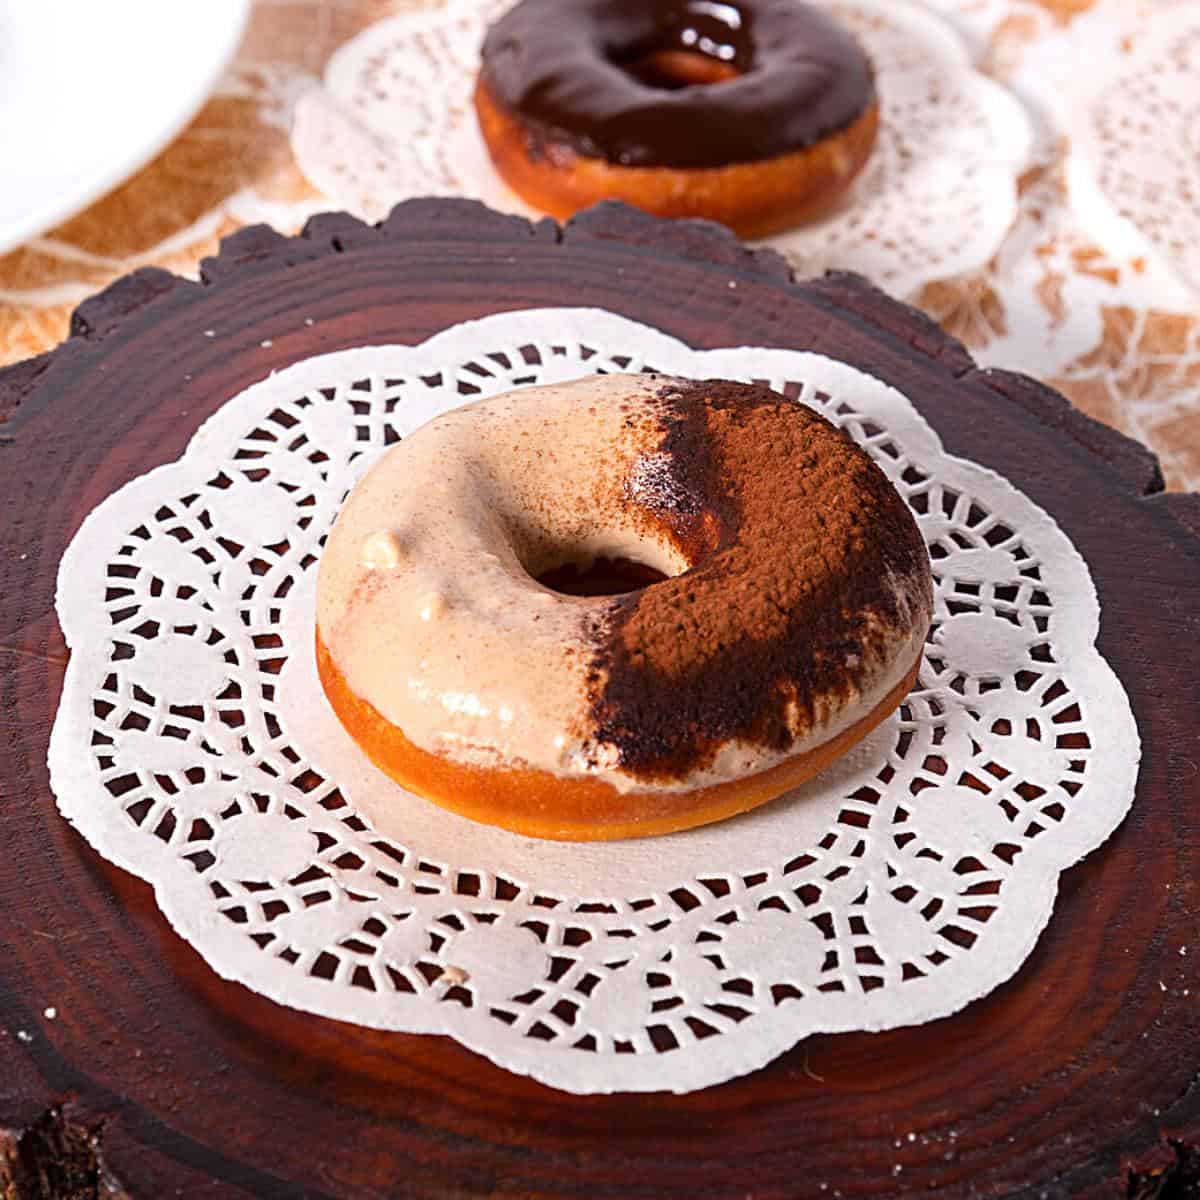 A glazed donut with tiramisu.